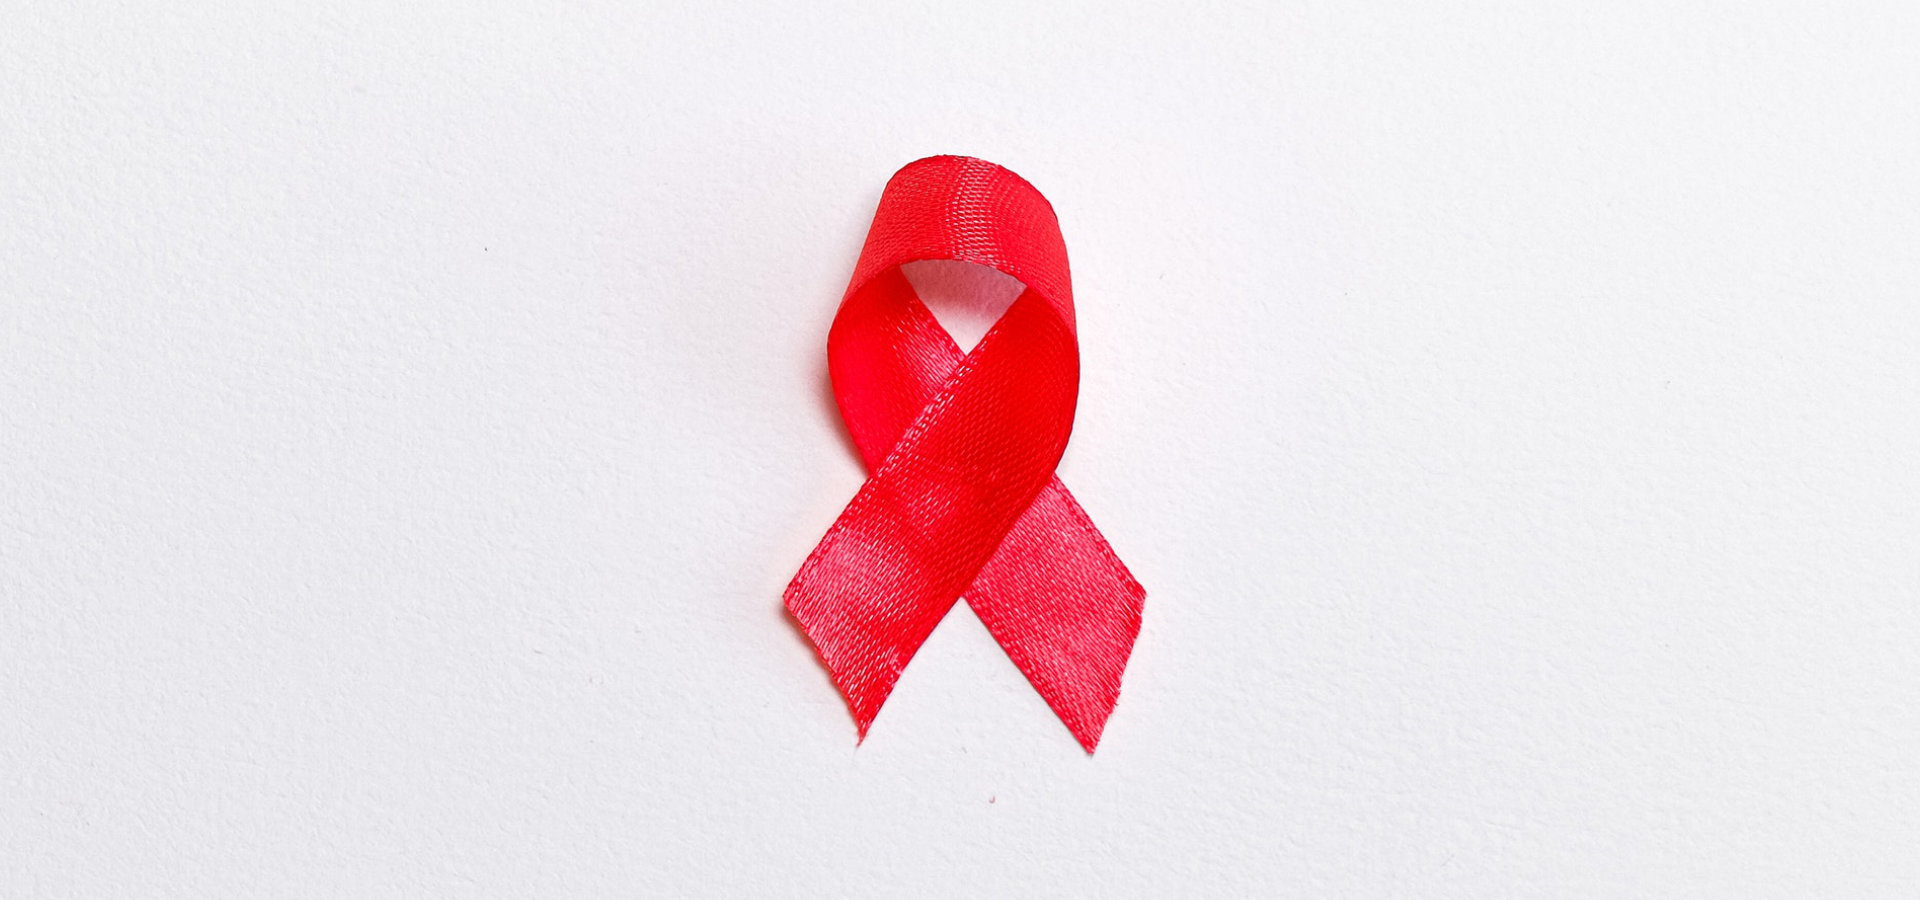 Não ser elegível para medicação que previne o VIH é um indicador de menor risco apenas a curto prazo